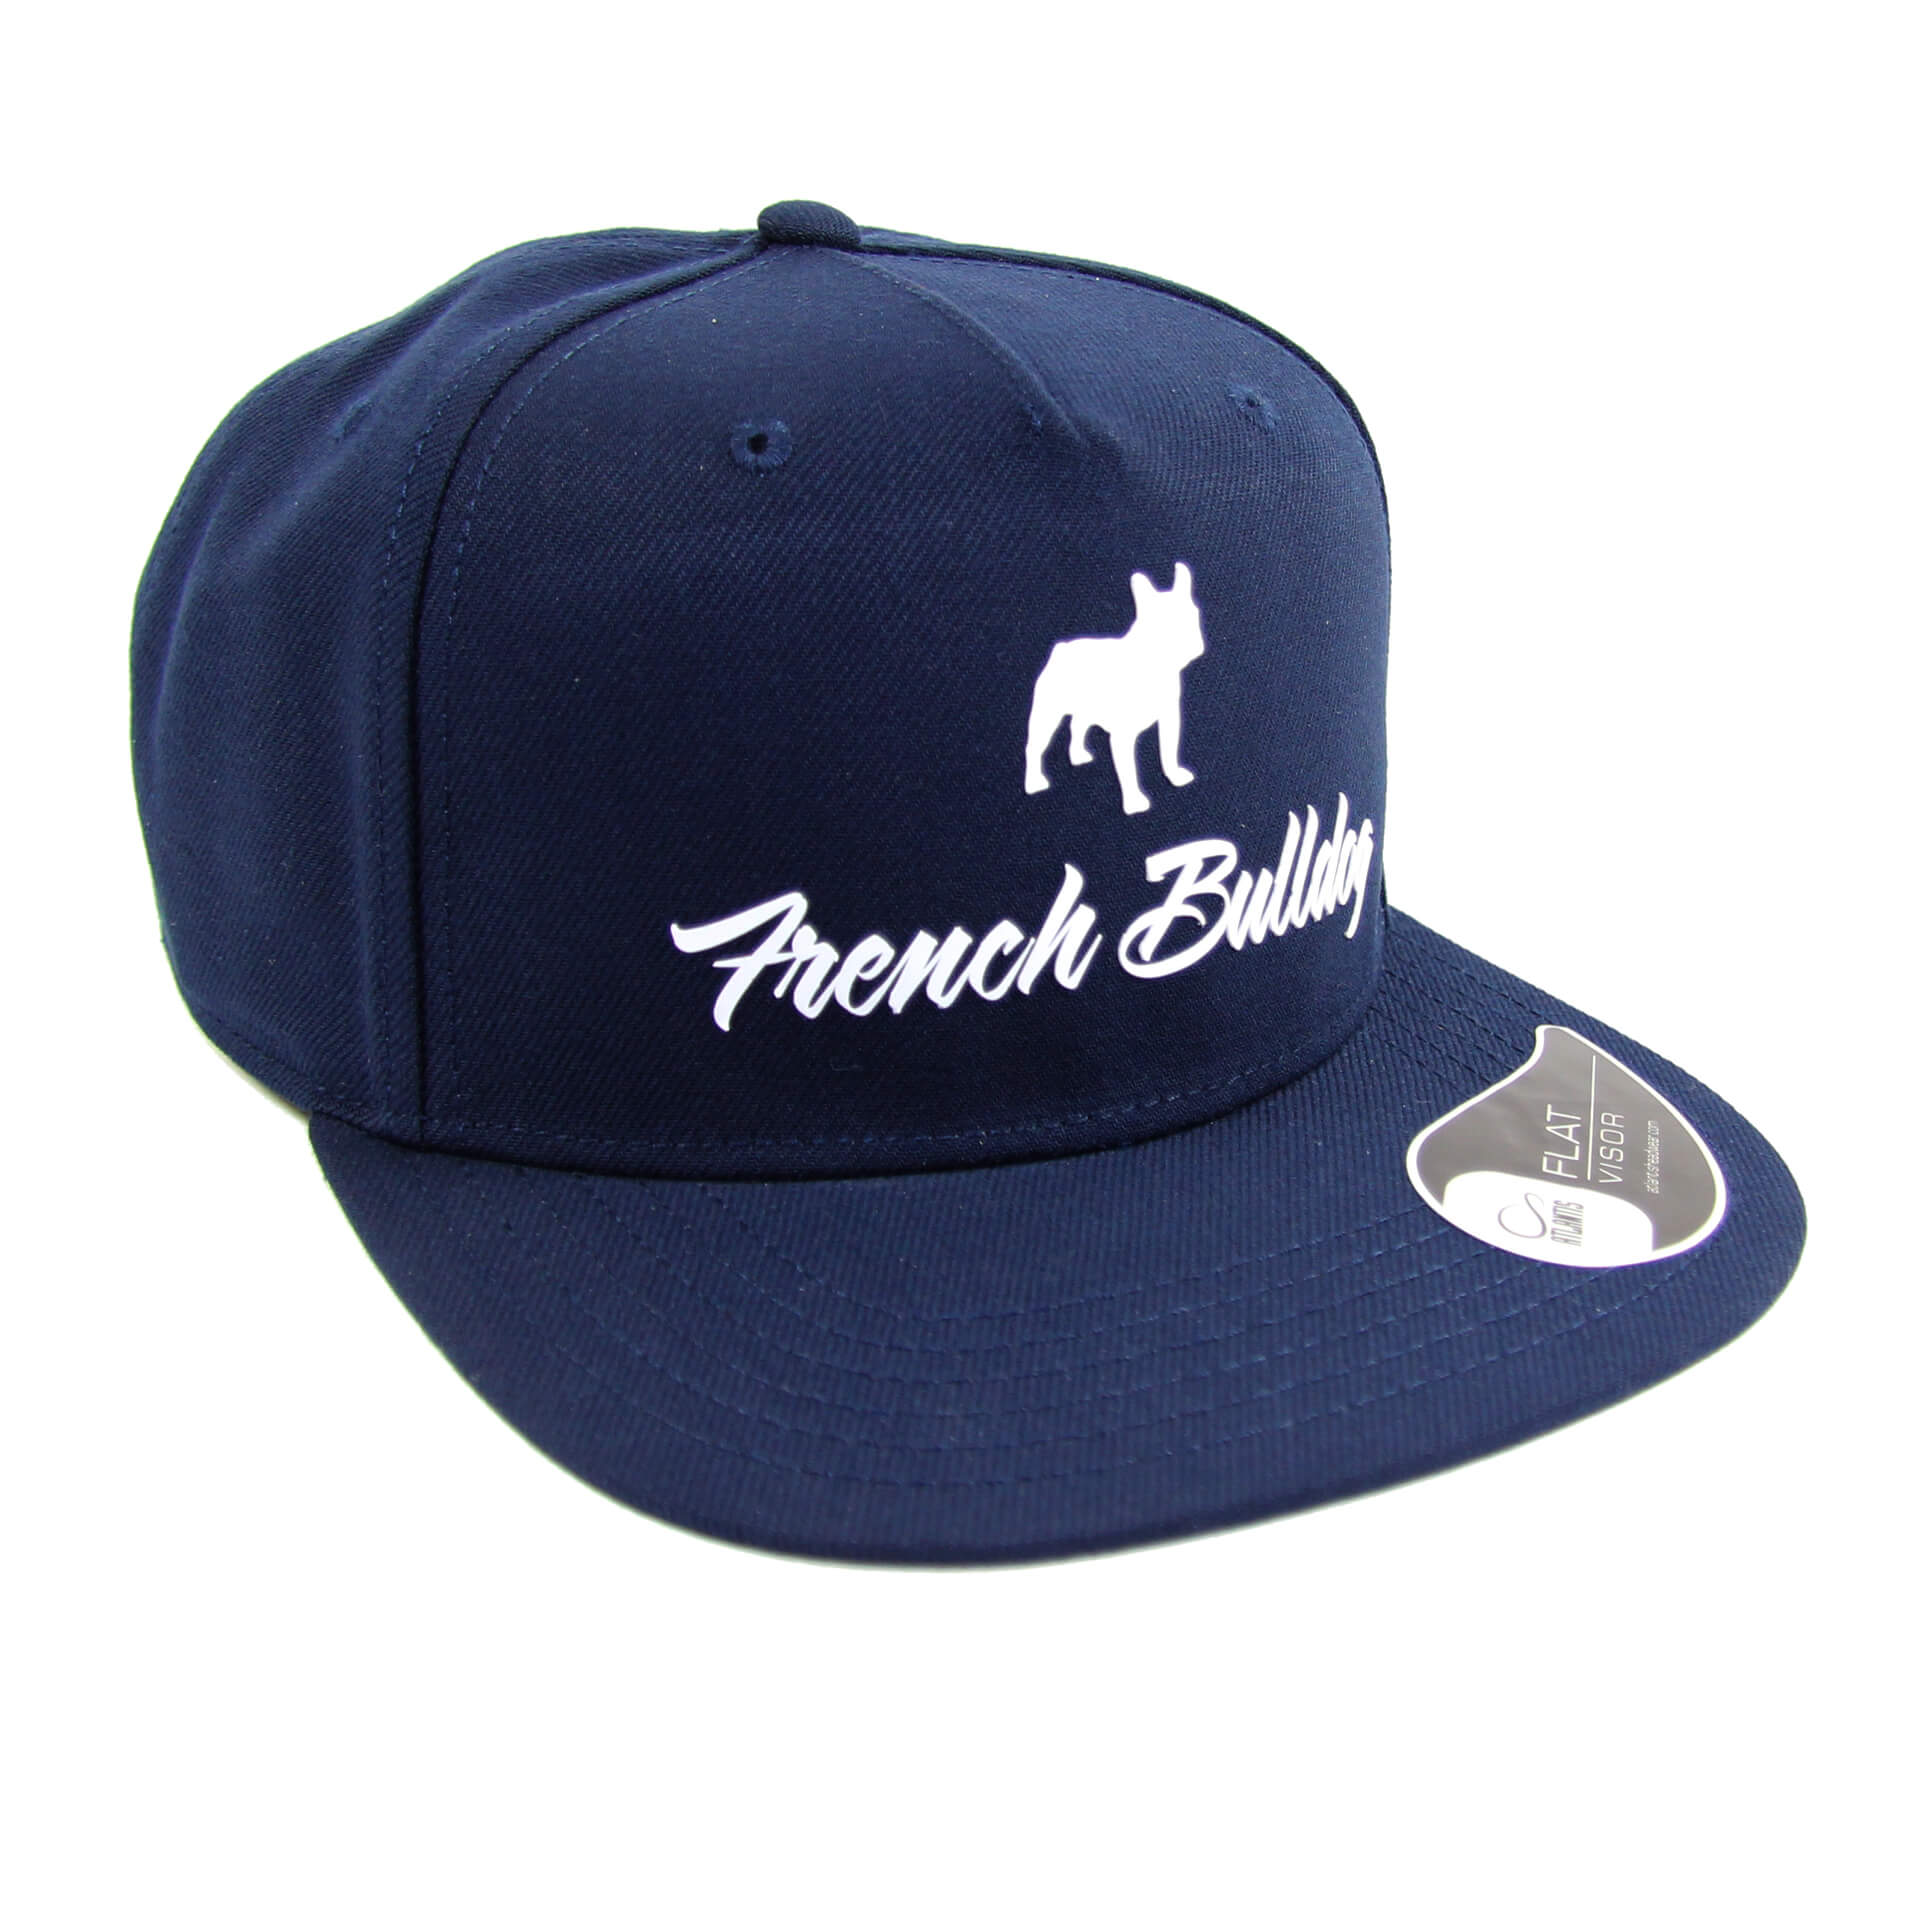 French Bulldog Cap Zeus blau